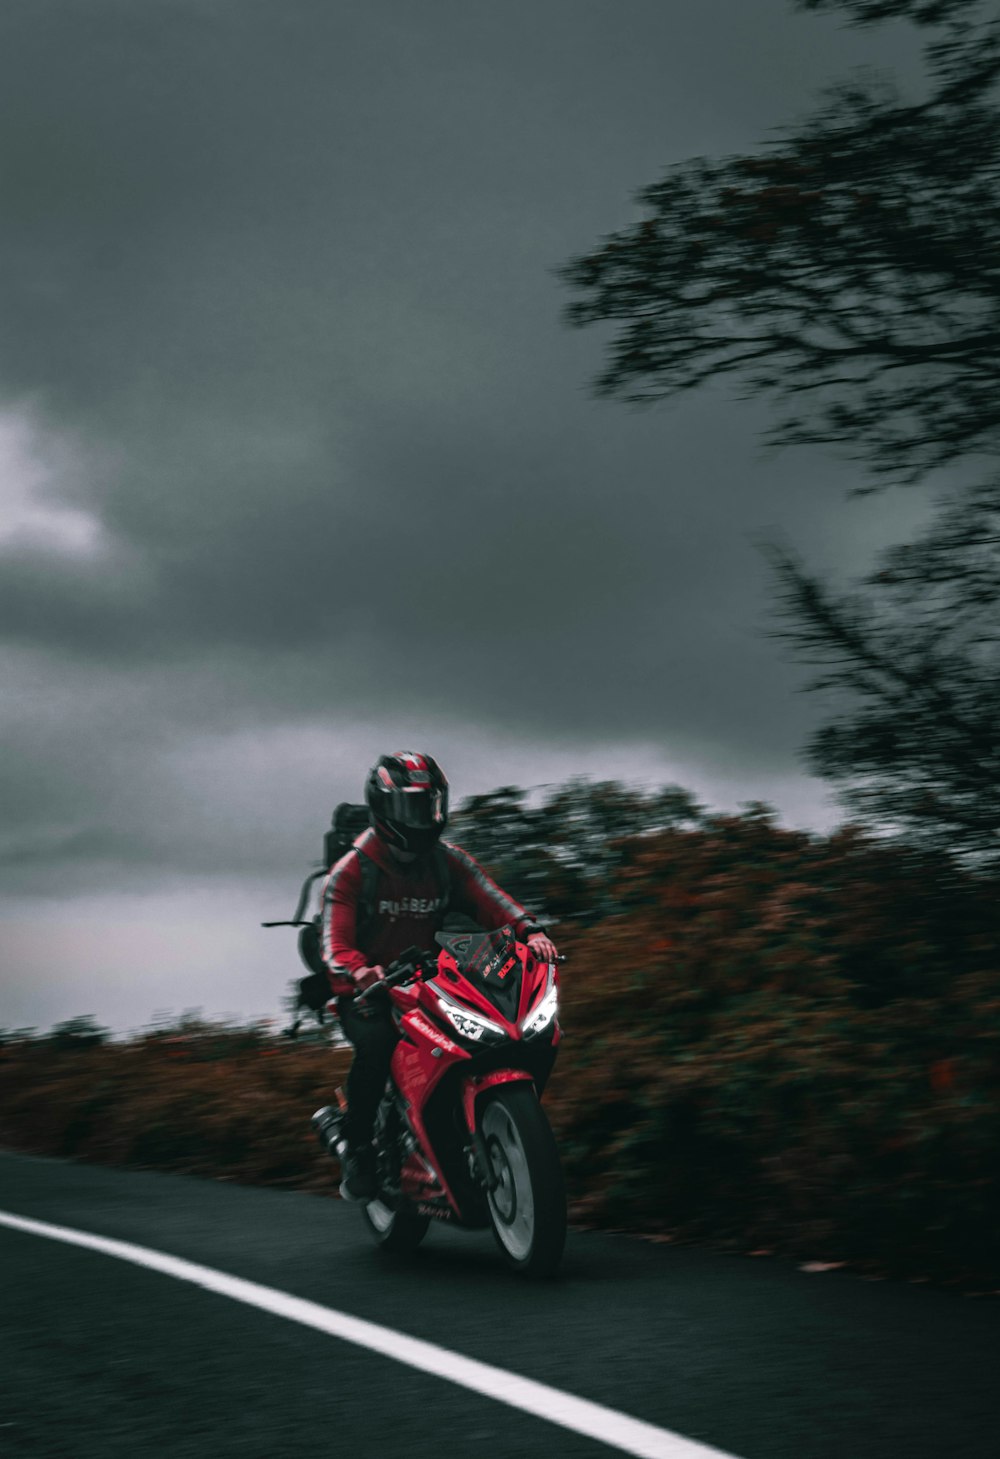 Un hombre conduciendo una motocicleta roja por una carretera con curvas